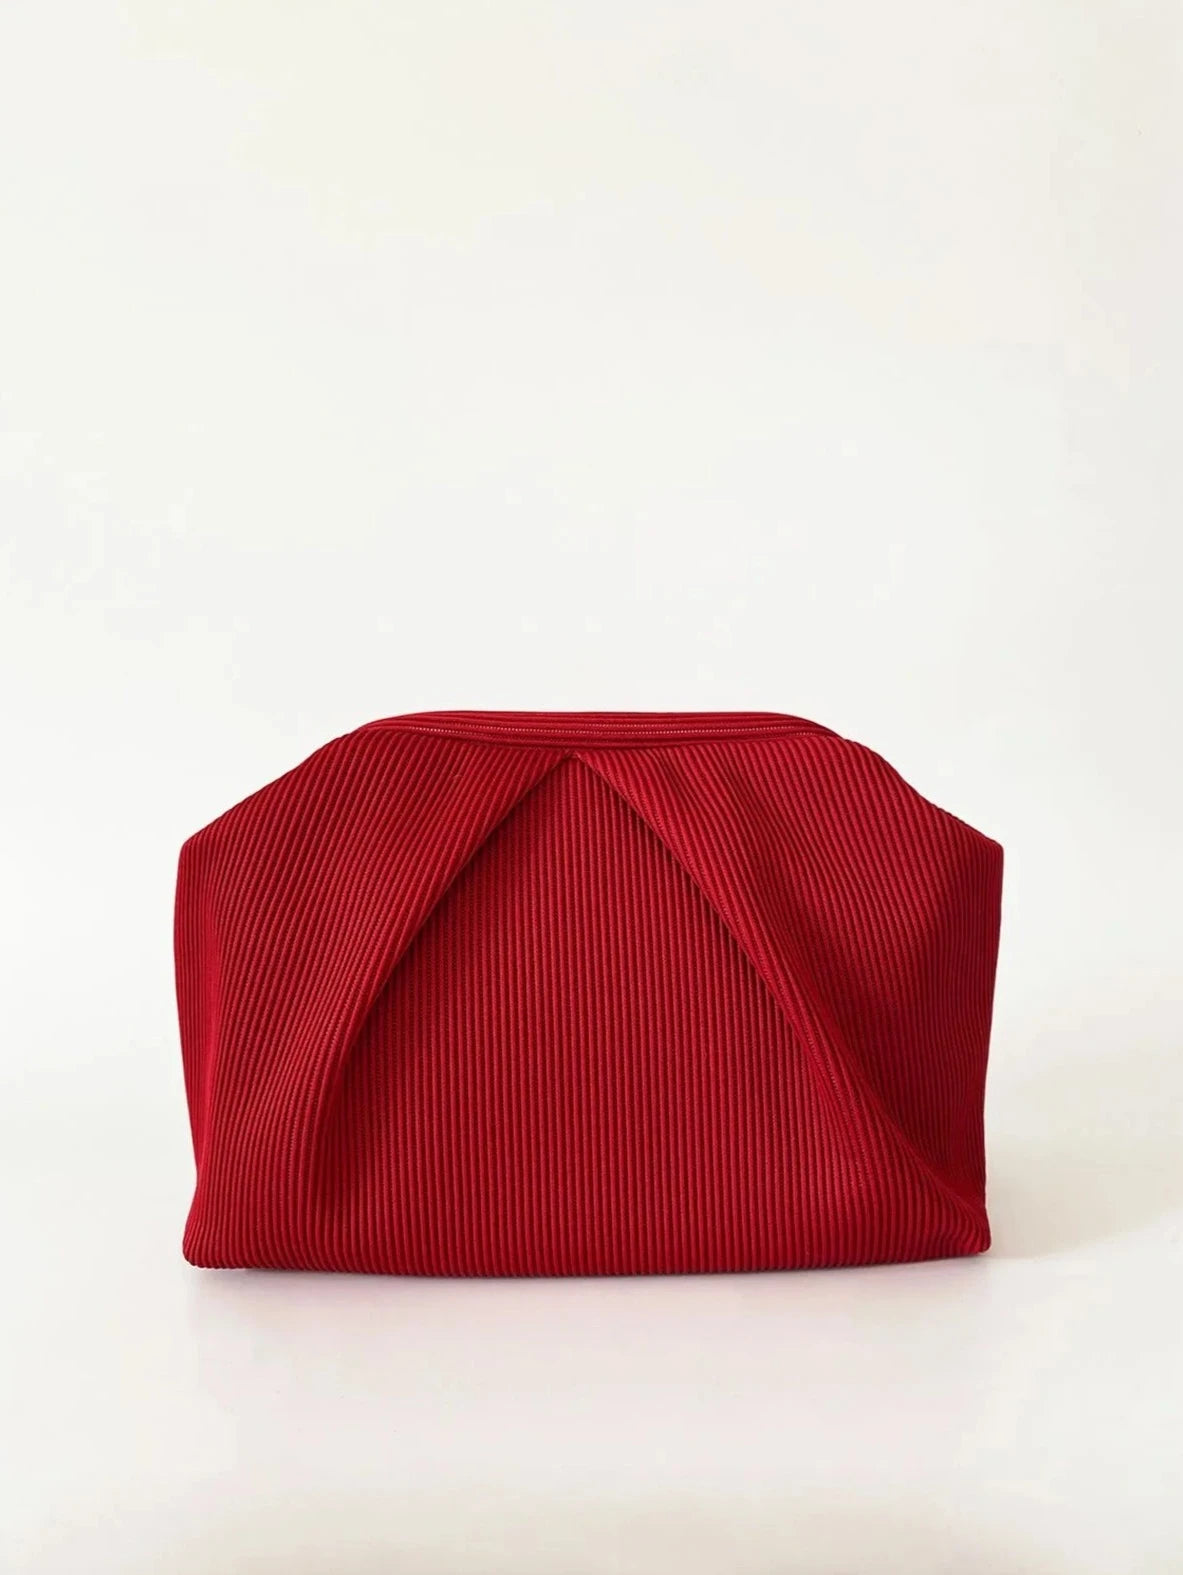 Elegant Red Pleated Clutch Handbag clutch LUNARITY GARAGE Red  